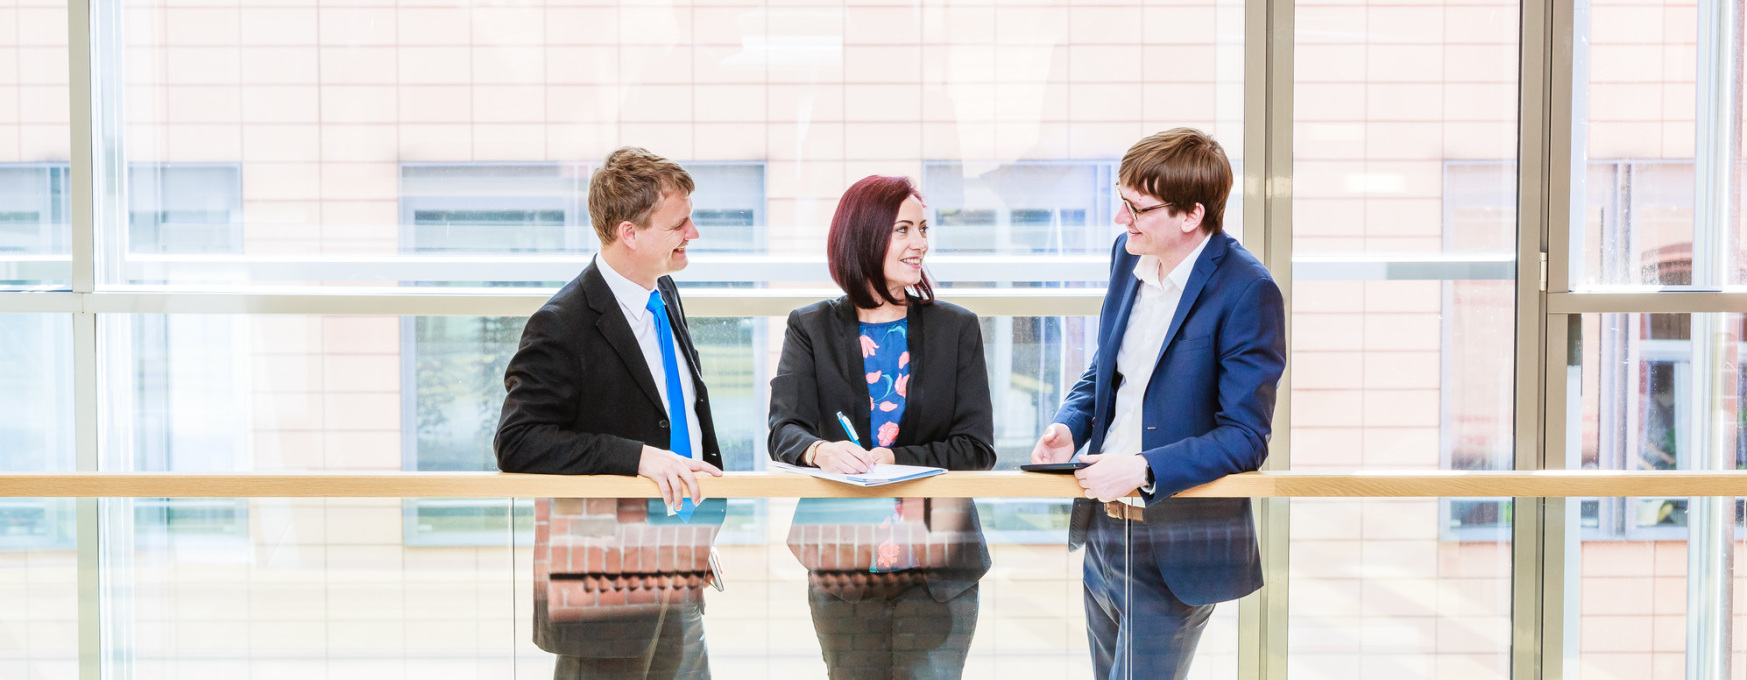 Karriere bei der Thüringer Aufbaubank (im Bild sind drei Mitarbeiterinnen und Mitarbeiter der TAB zu sehen)